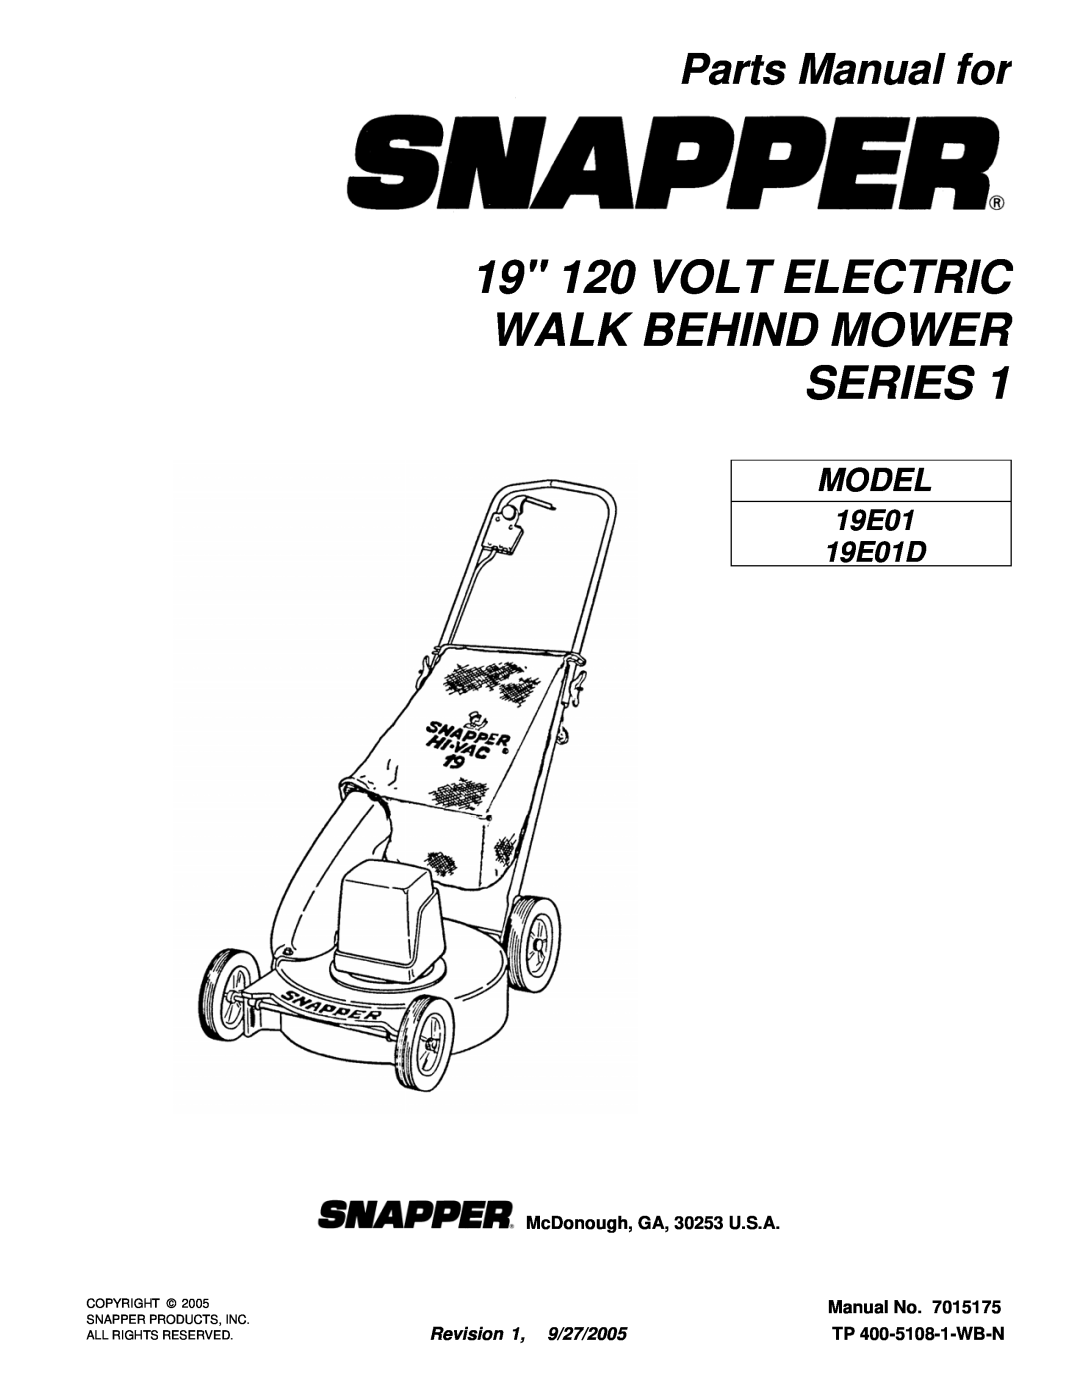 Snapper 19E03 manual 19 120 VOLT ELECTRIC WALK BEHIND MOWER SERIES, Parts Manual for, McDonough, GA, 30253 U.S.A, Model 